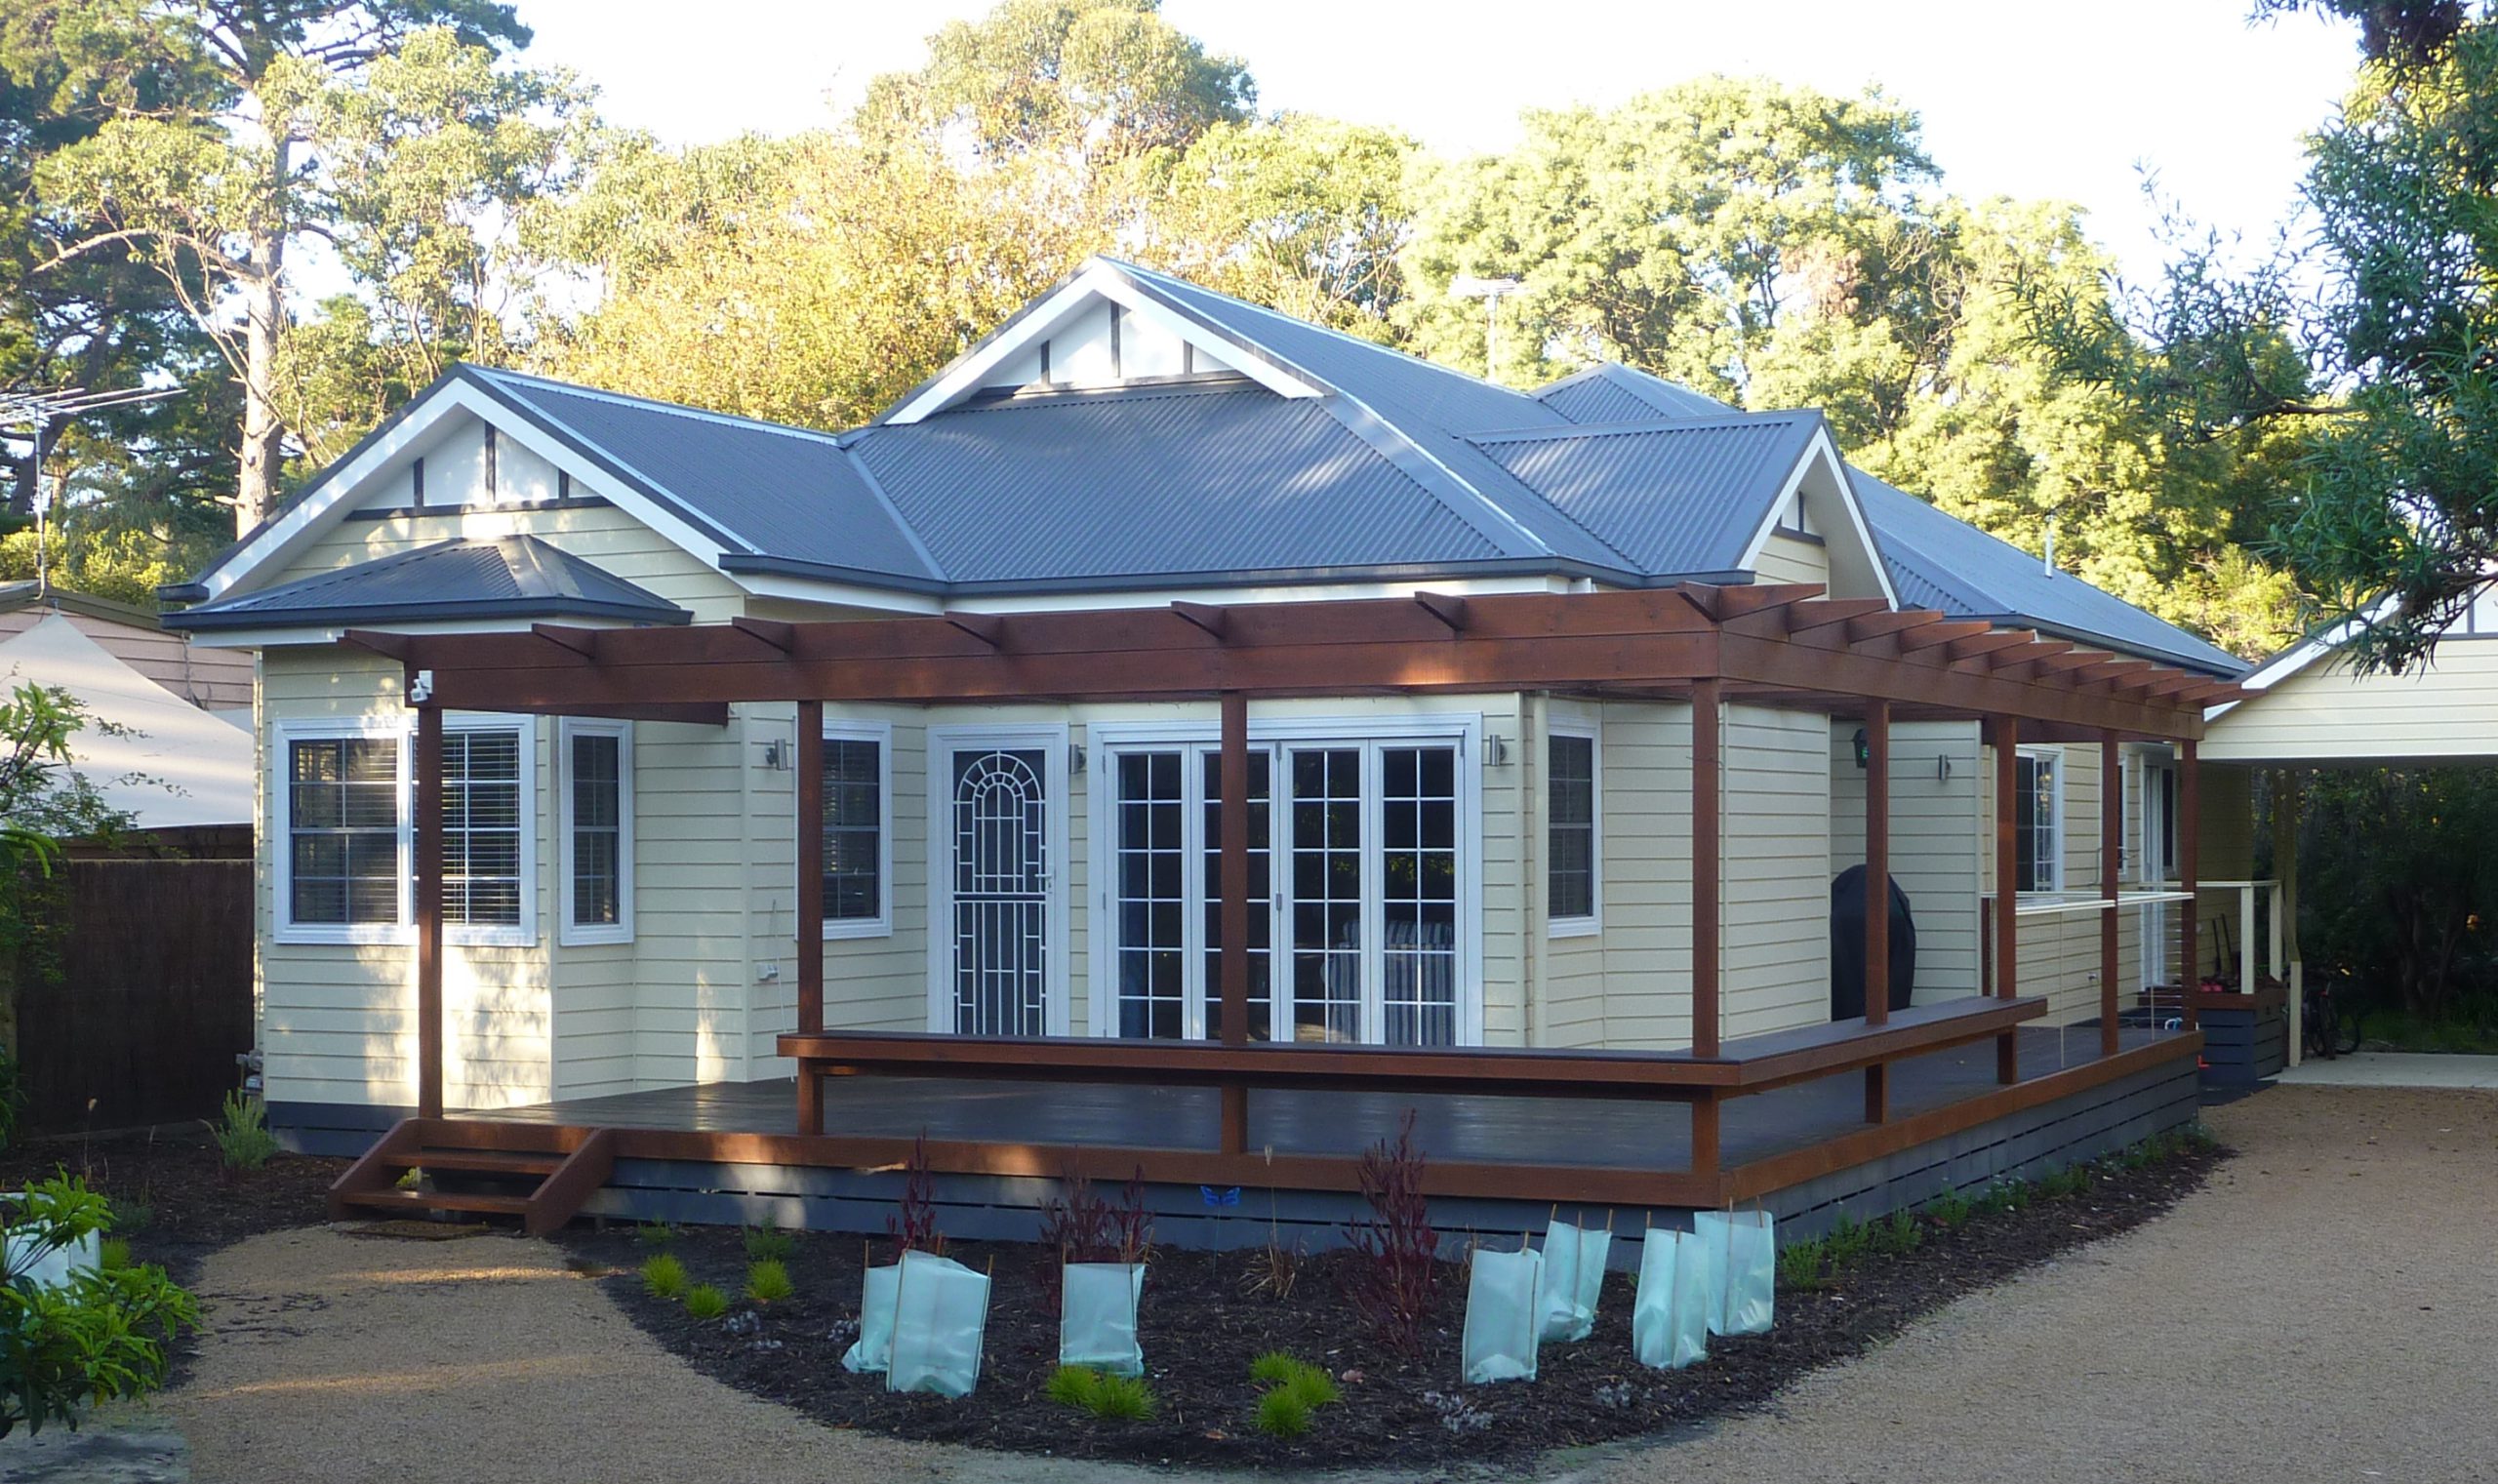 Maison de Plage - Merrick Beach home - federation style cottage built by Farm Houses of Australia